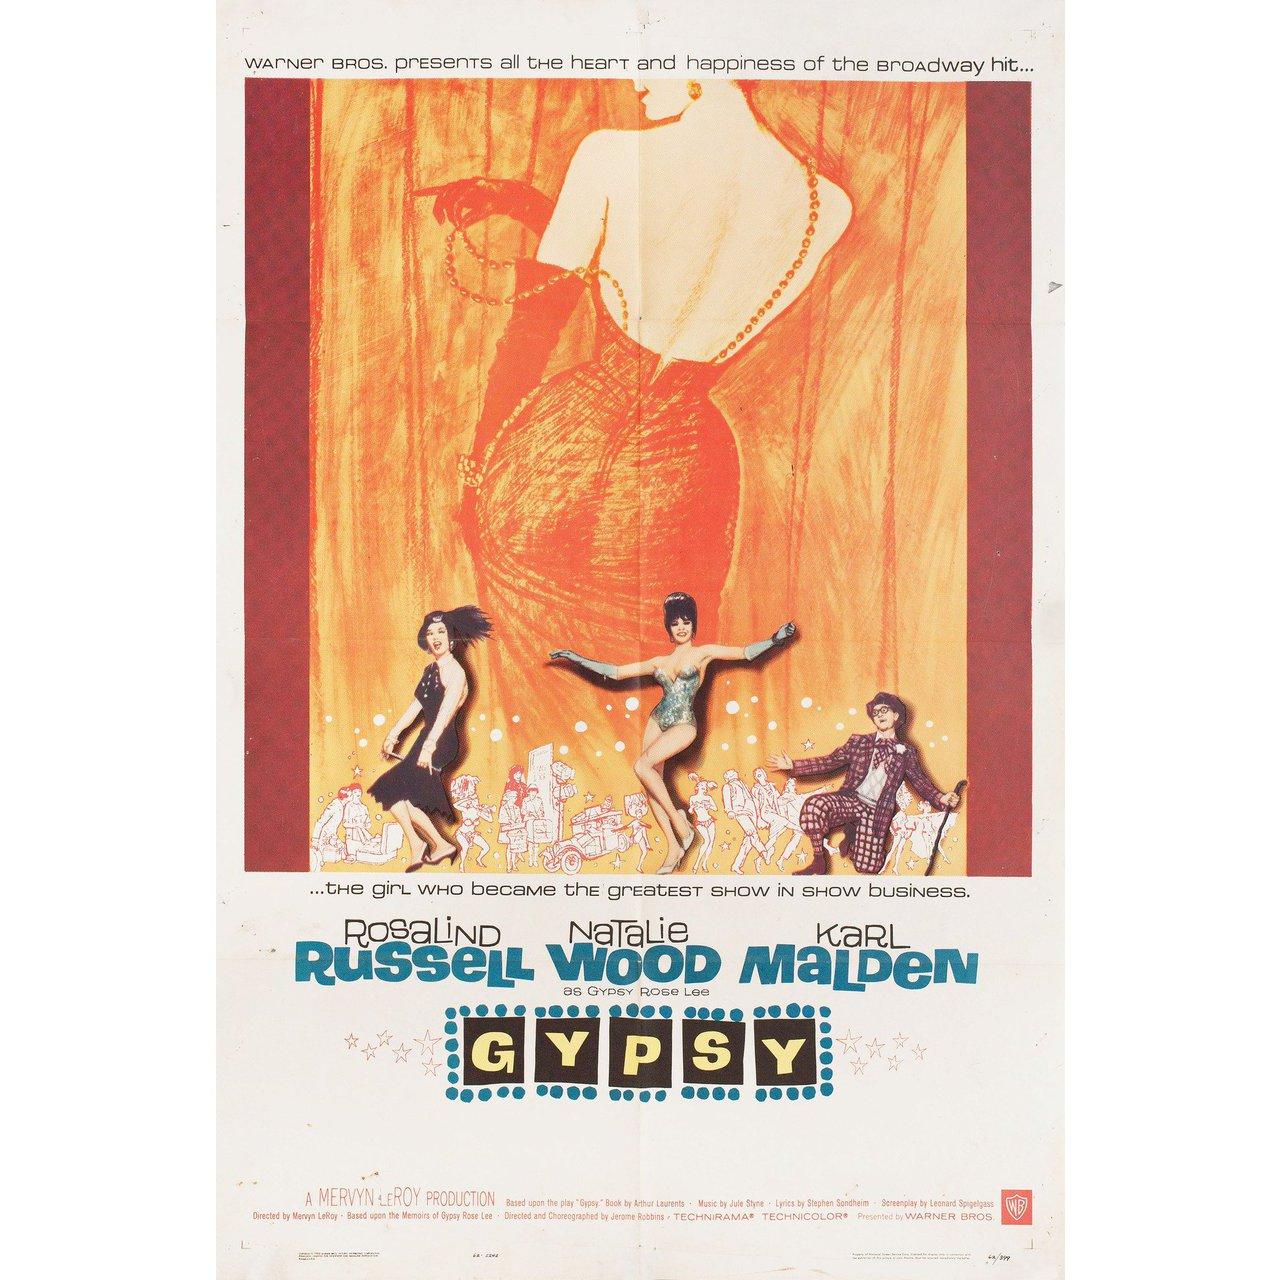 Affiche américaine originale de 1962 pour le film Gypsy réalisé par Mervyn LeRoy avec Rosalind Russell / Natalie Wood / Karl Malden / Paul Wallace. Bon-Très bon état, plié avec des dégâts d'eau. De nombreuses affiches originales ont été publiées